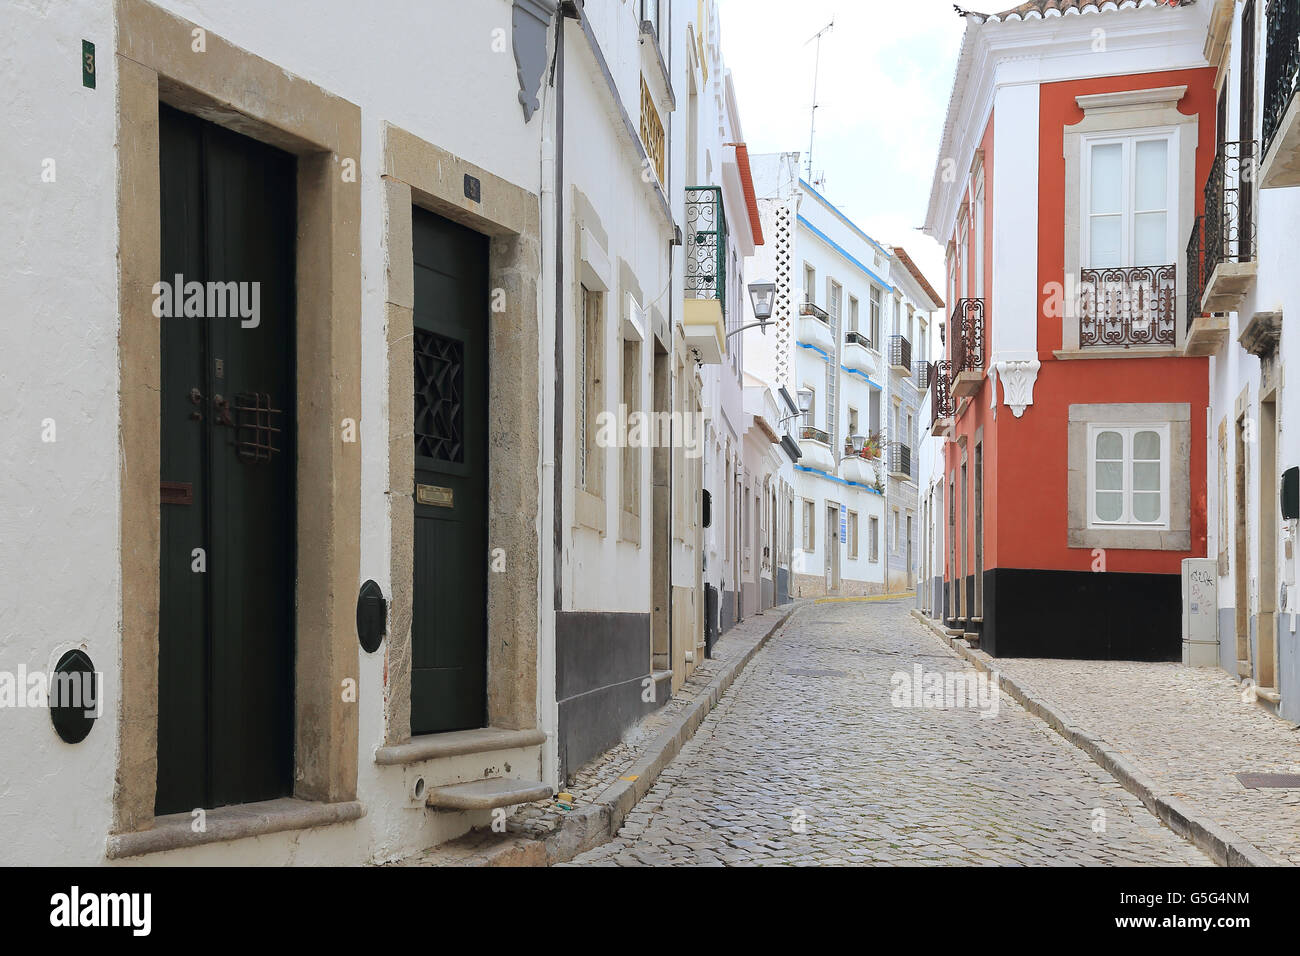 Streets of Tavira, Algarve, Portugal Stock Photo